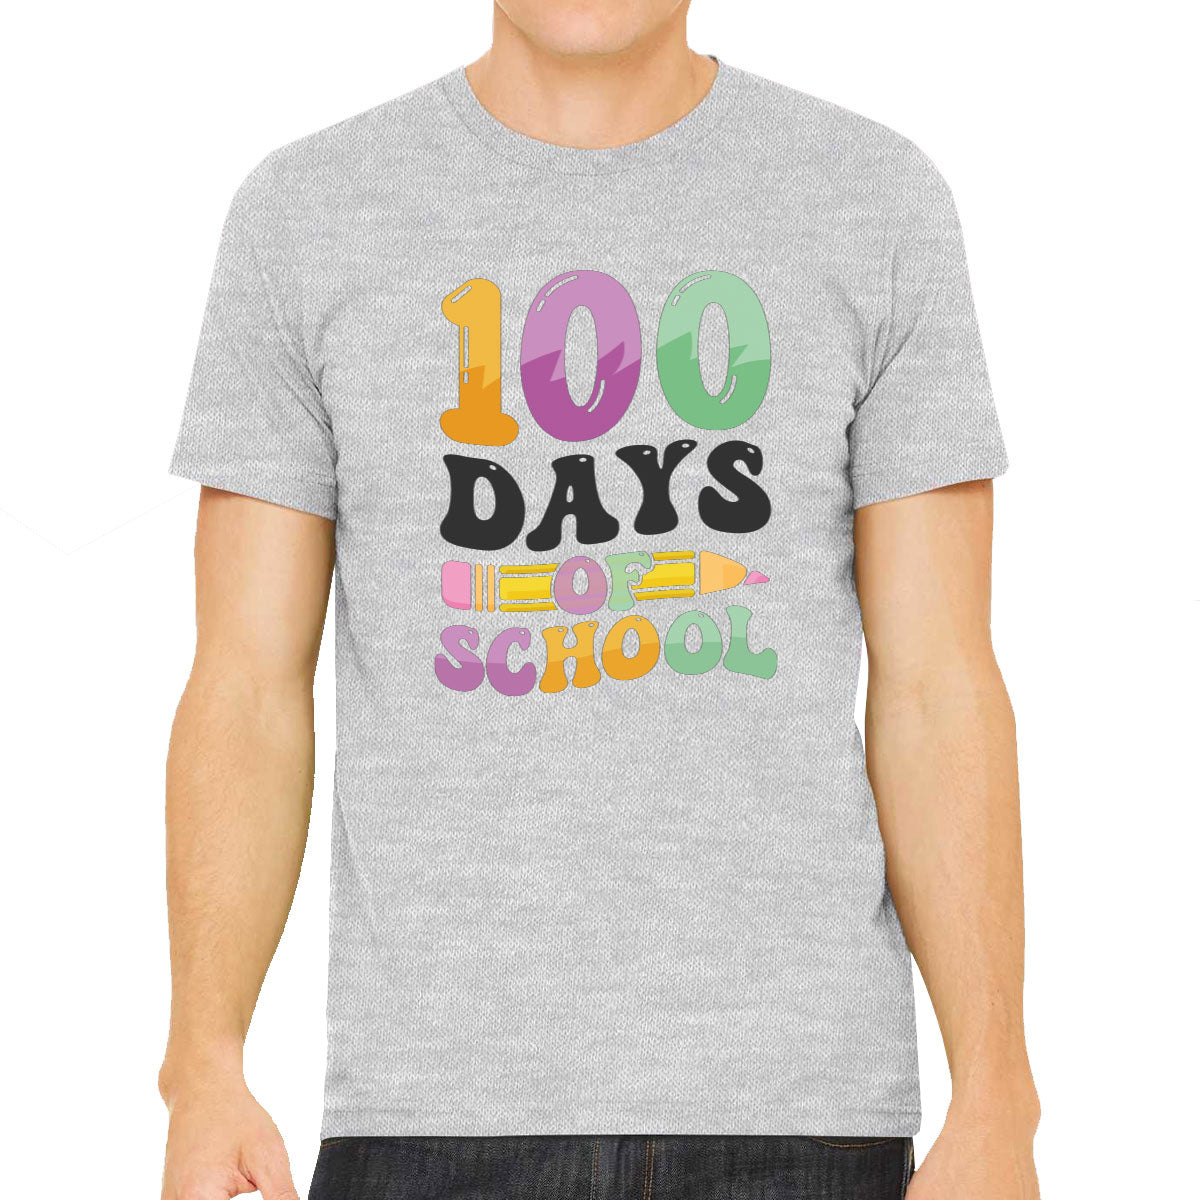 100 Days Of School Men's T-shirt